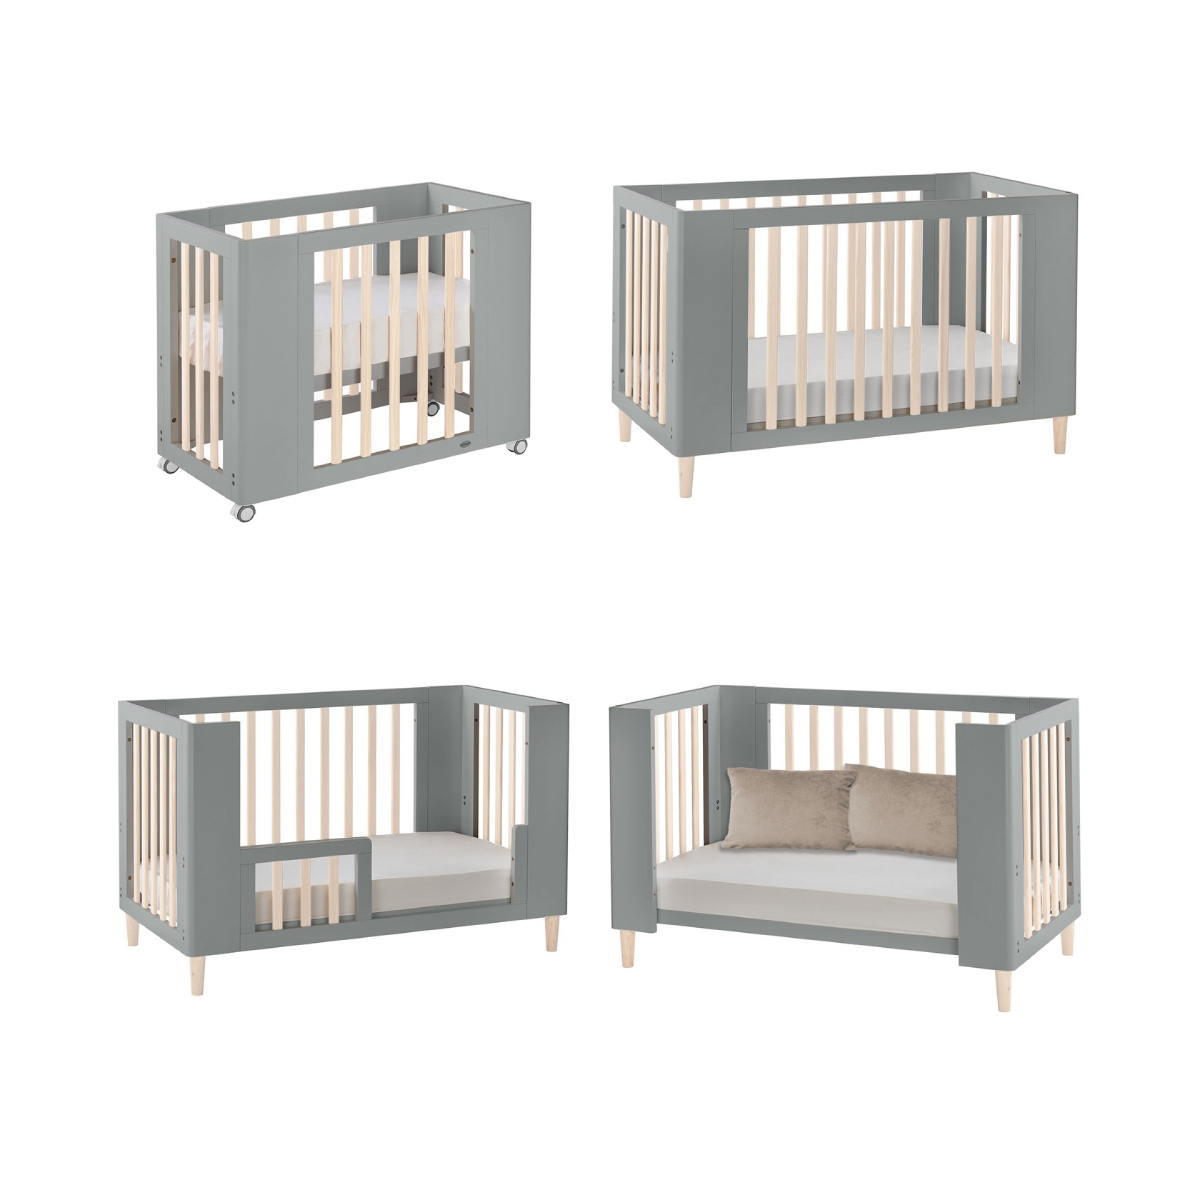 Cocoon Evoke 4-in-1 Nursery Furniture System